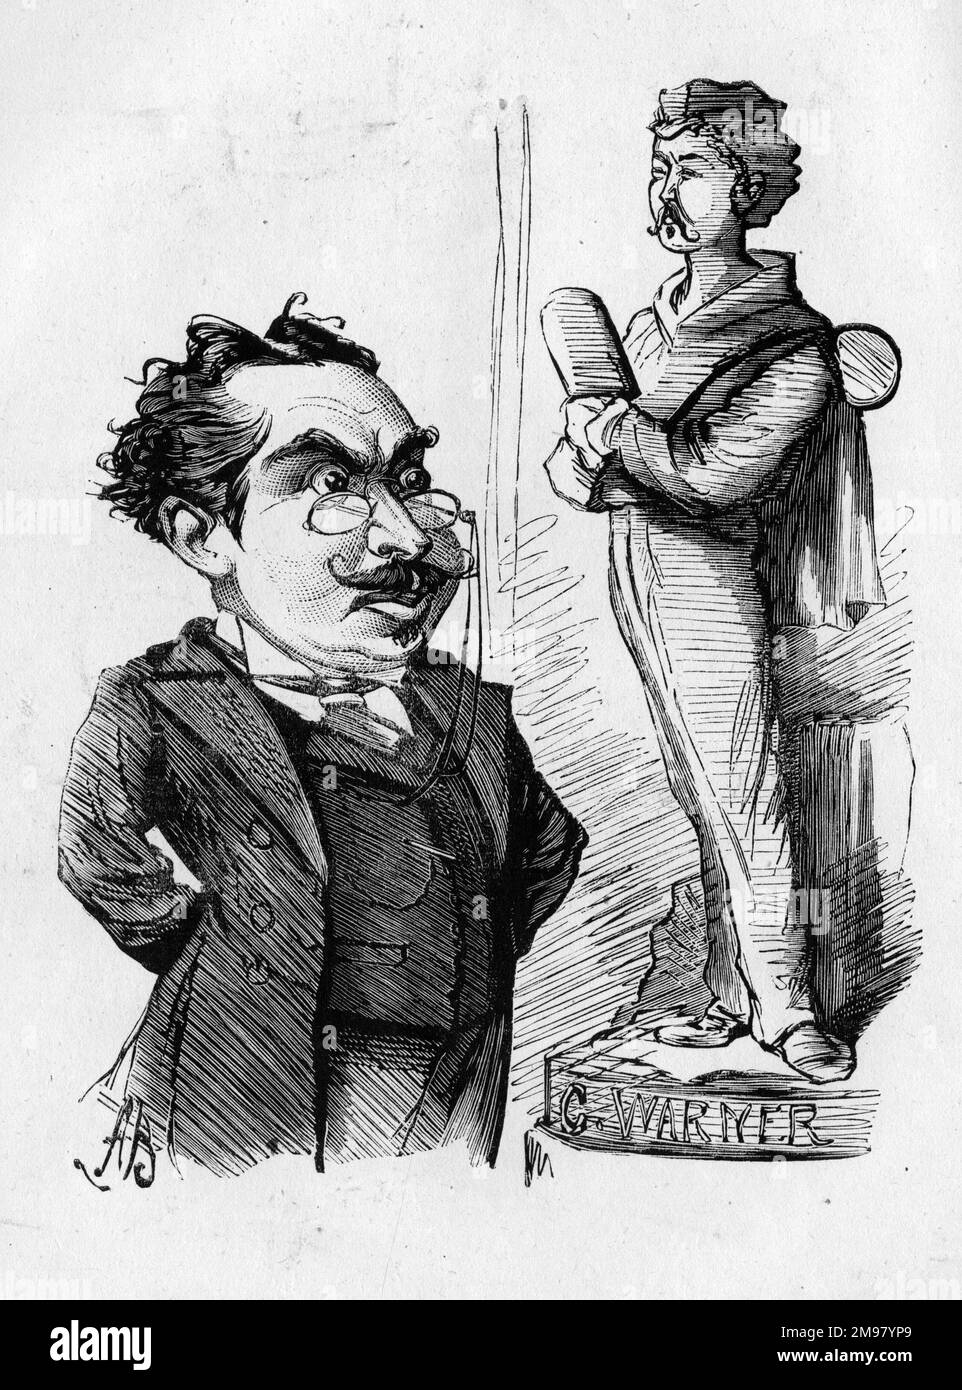 Caricatura de un hombre fruncido el ceño, posiblemente un director de teatro, con una estatua de Charles Lickfold Warner (1846-1909), actor inglés. Cuando montas un ídolo, debes evitar que se escape. Foto de stock